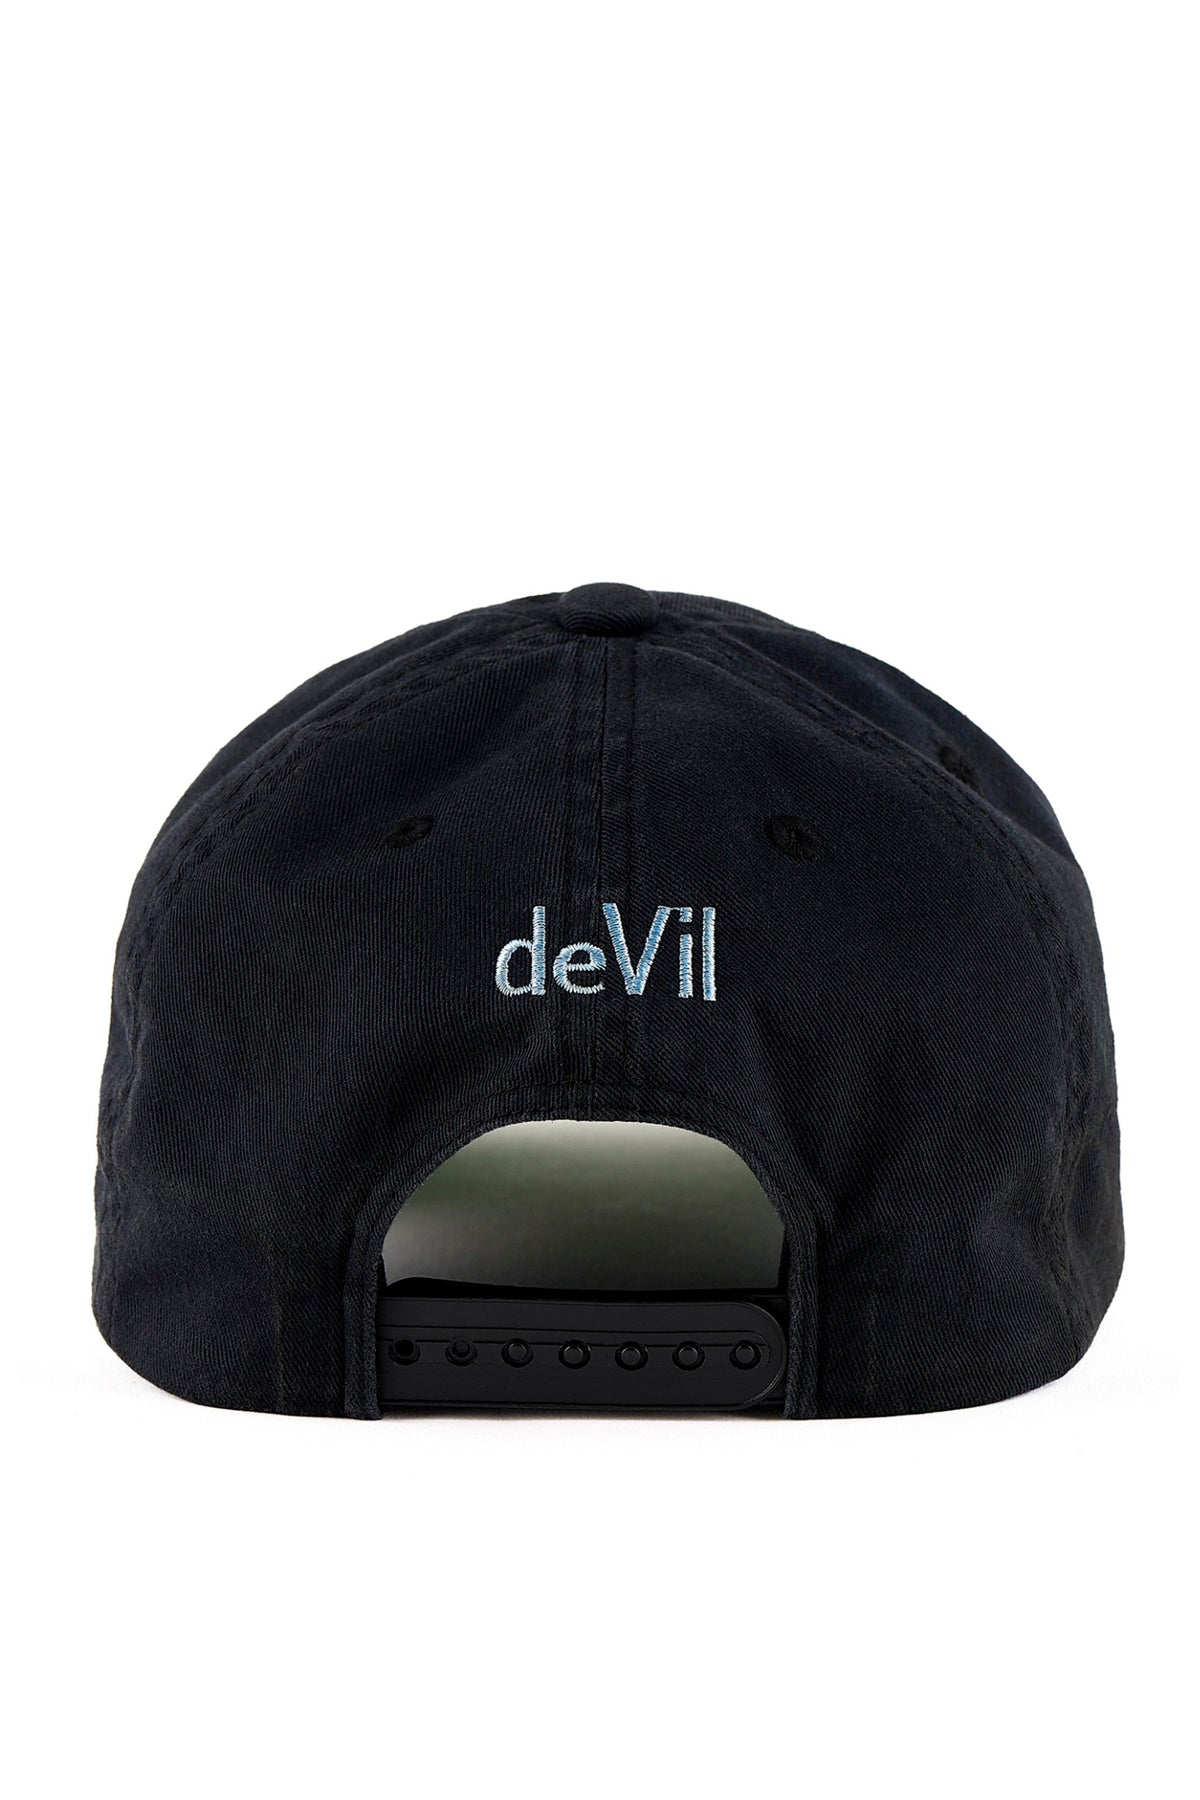 CAP/DEVIL / BLK